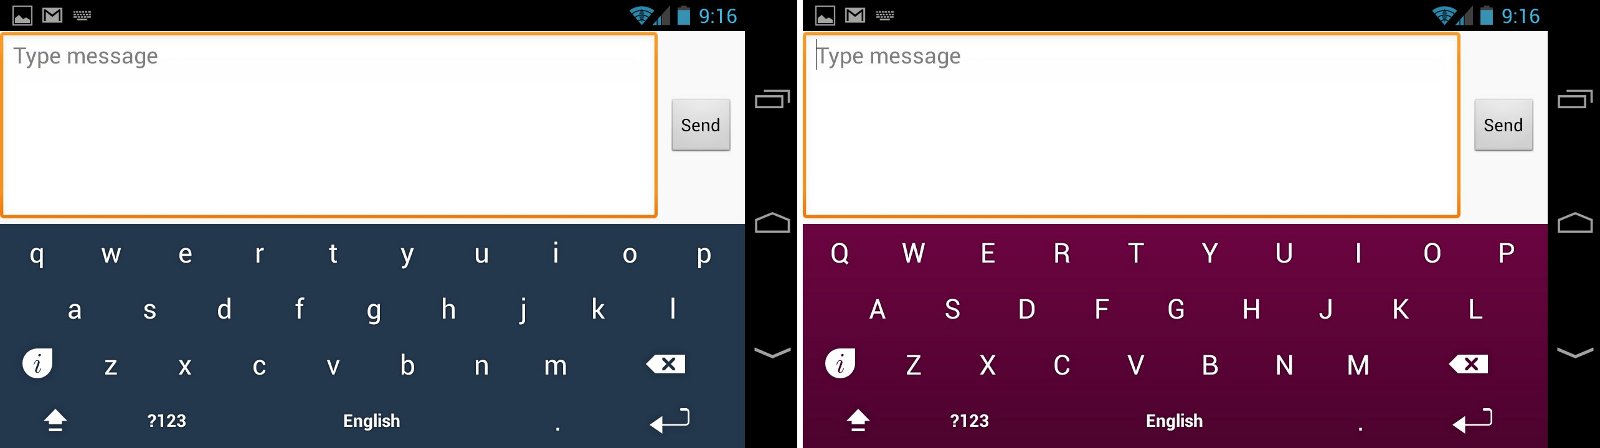 Keymonk Keyboard: Ứng dụng nhắn tin tốc độ cao cho smartphone 4